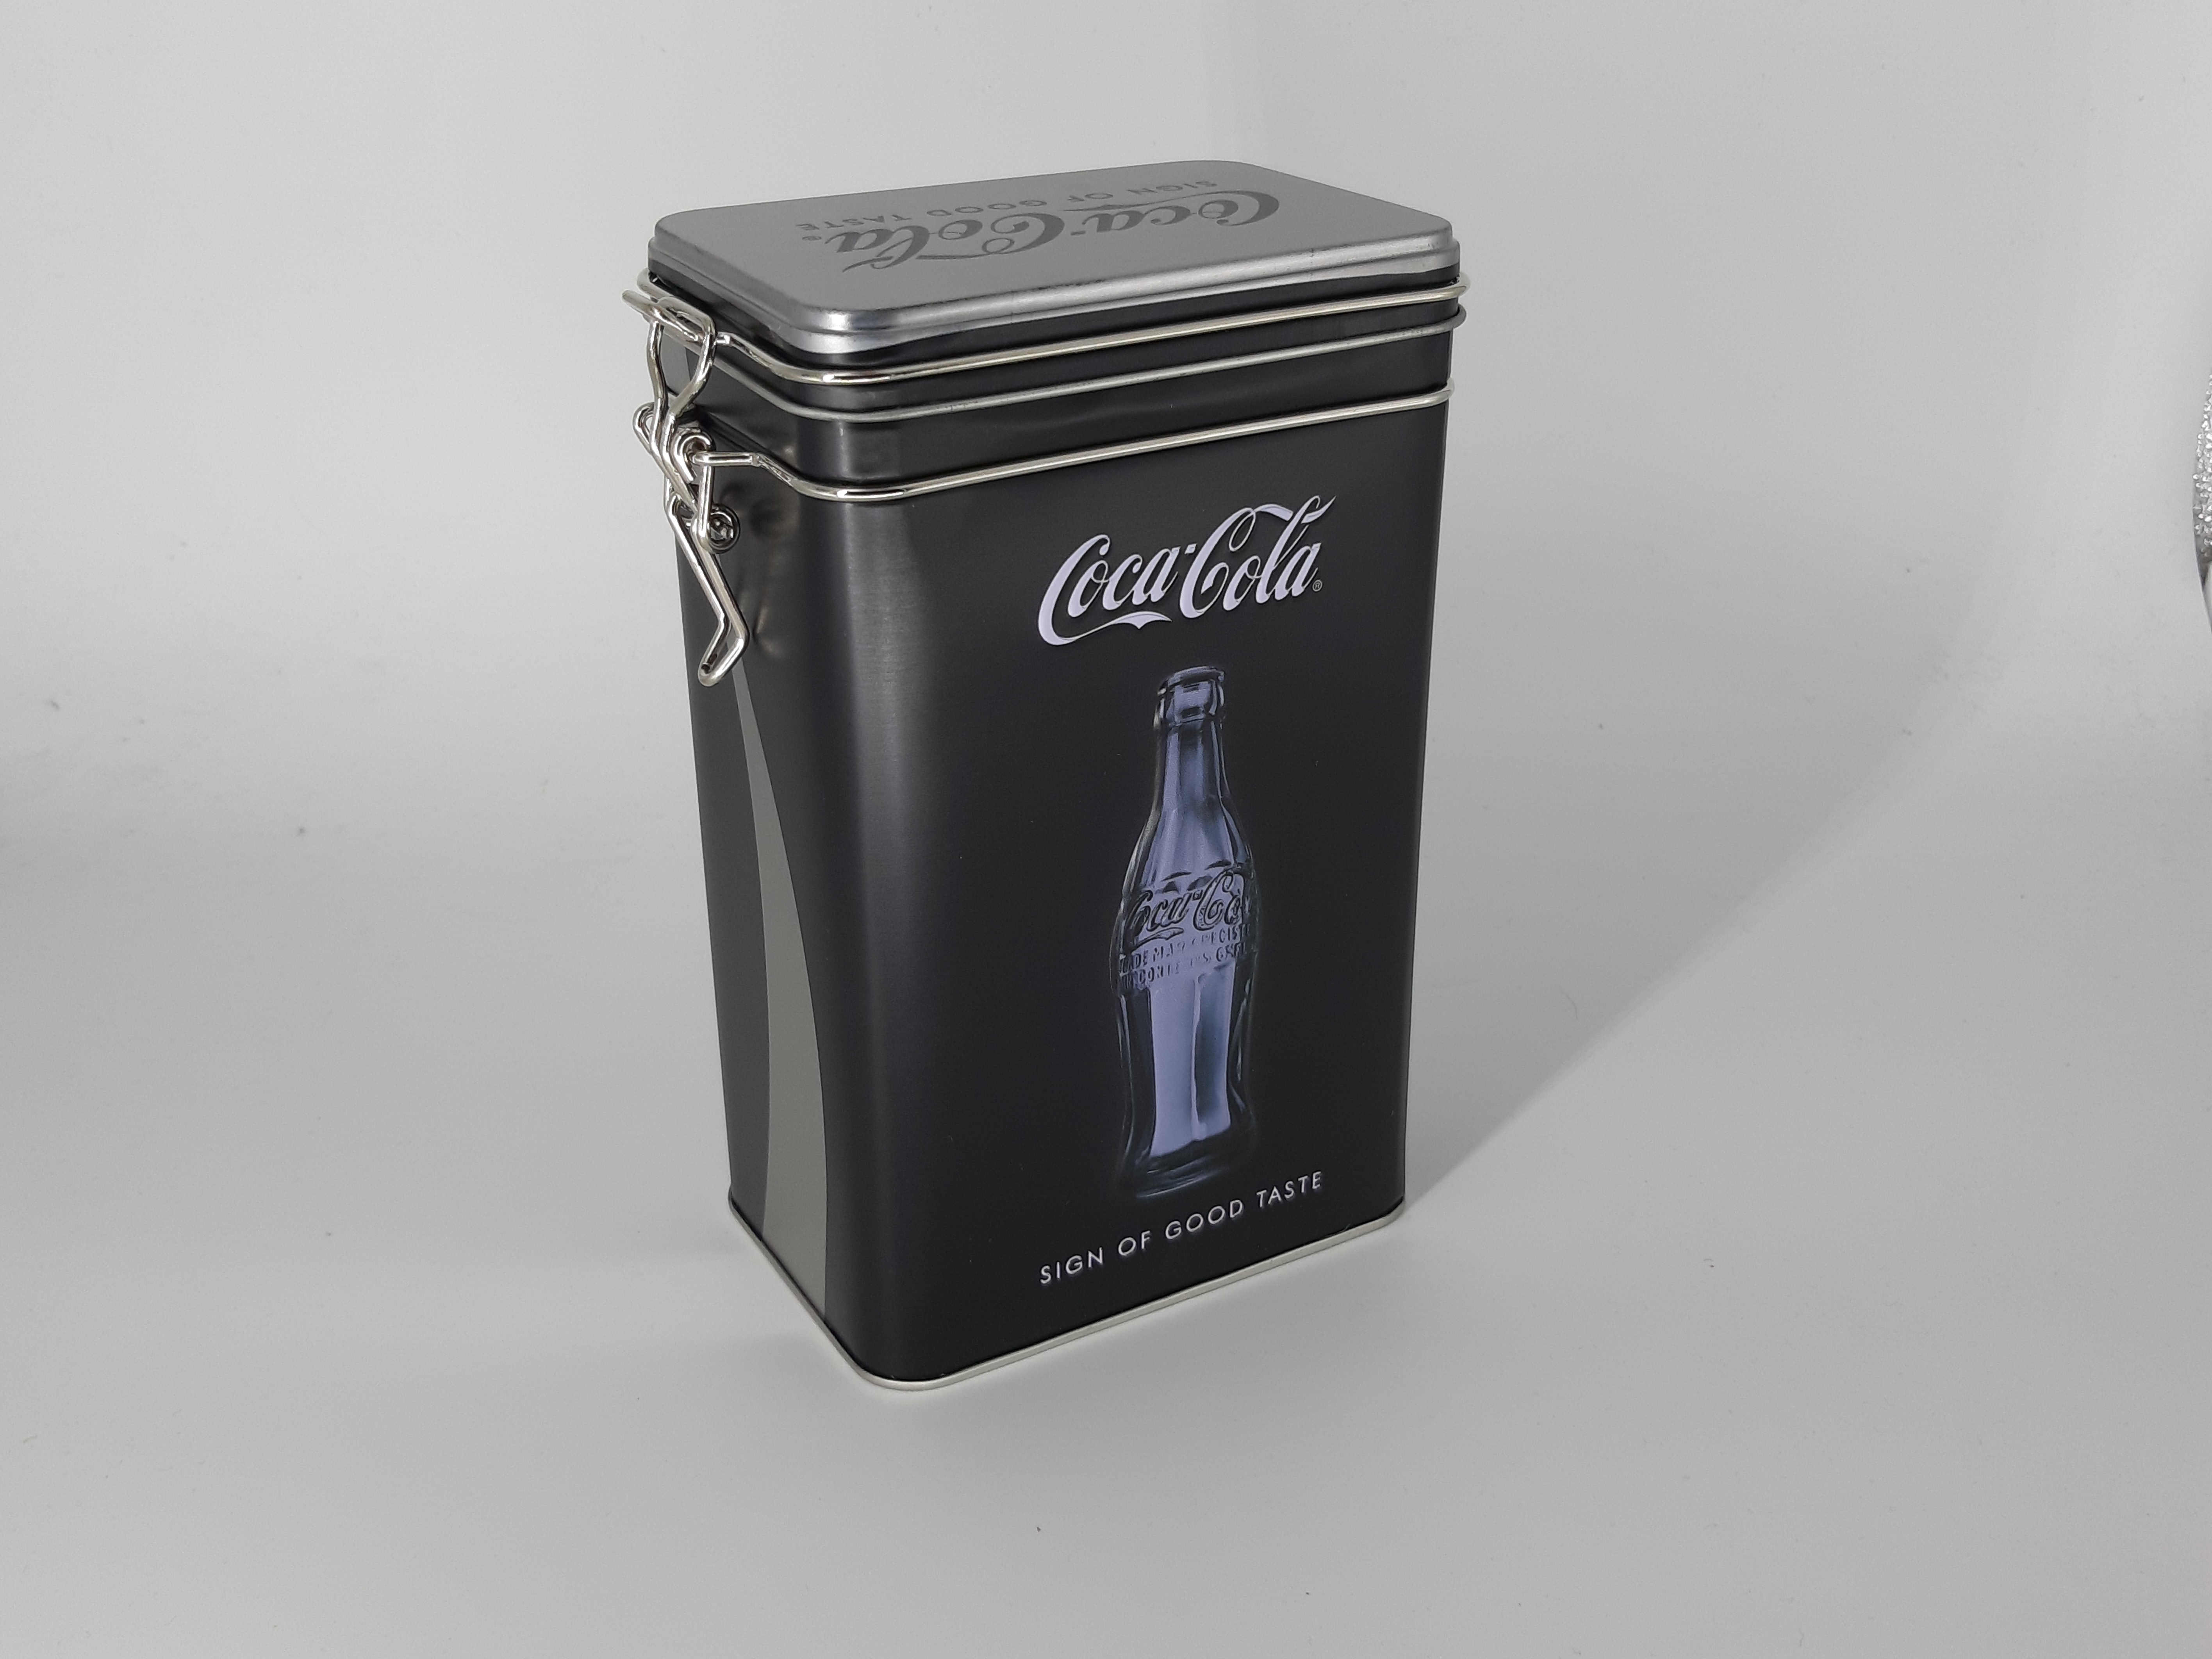 Reliefprägung Coca-Cola- Sign Of Good Taste 1,3 l Nostalgie Aromadose Retro 